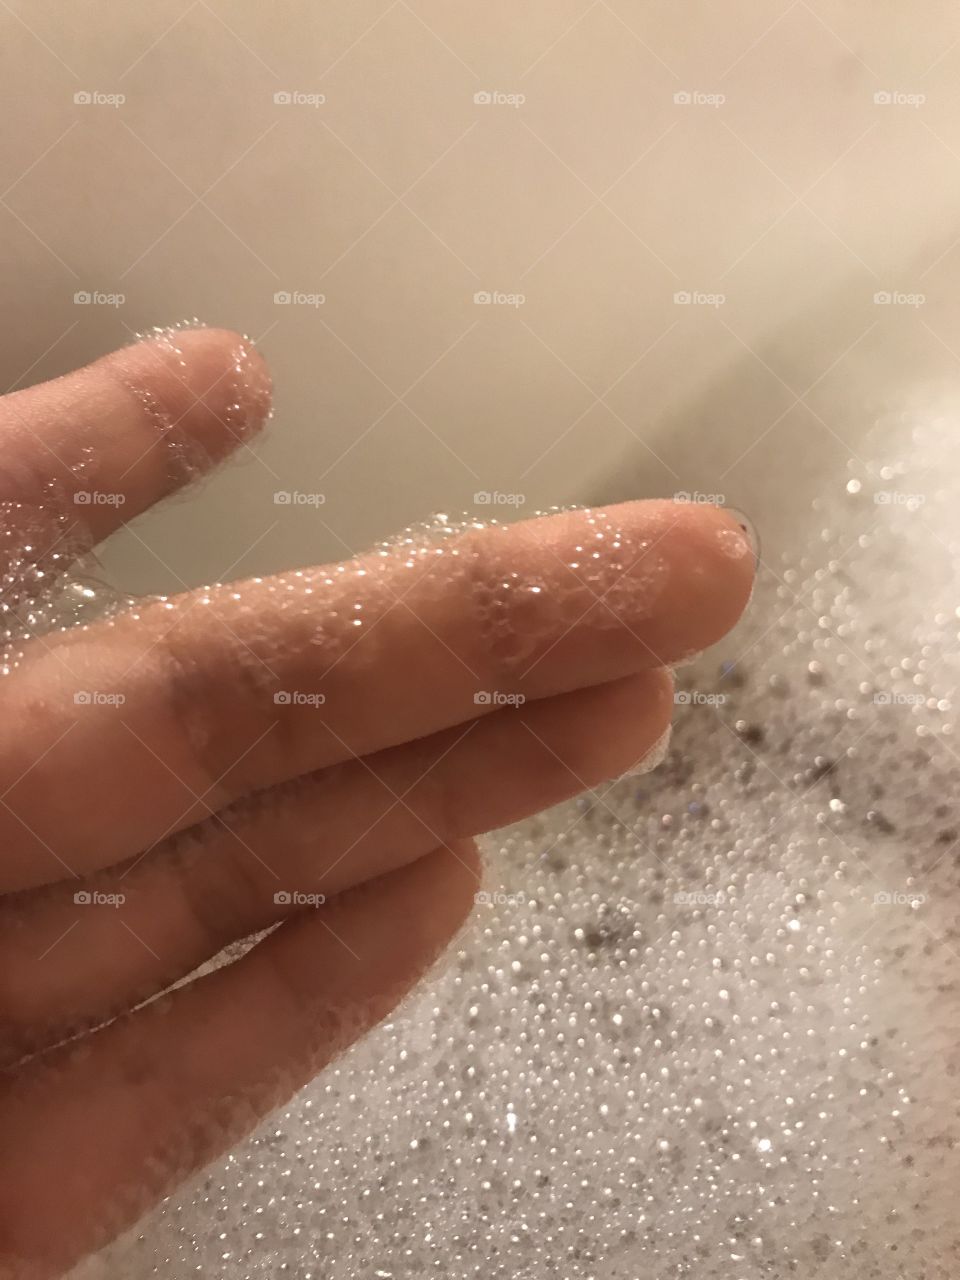 Some bubbles